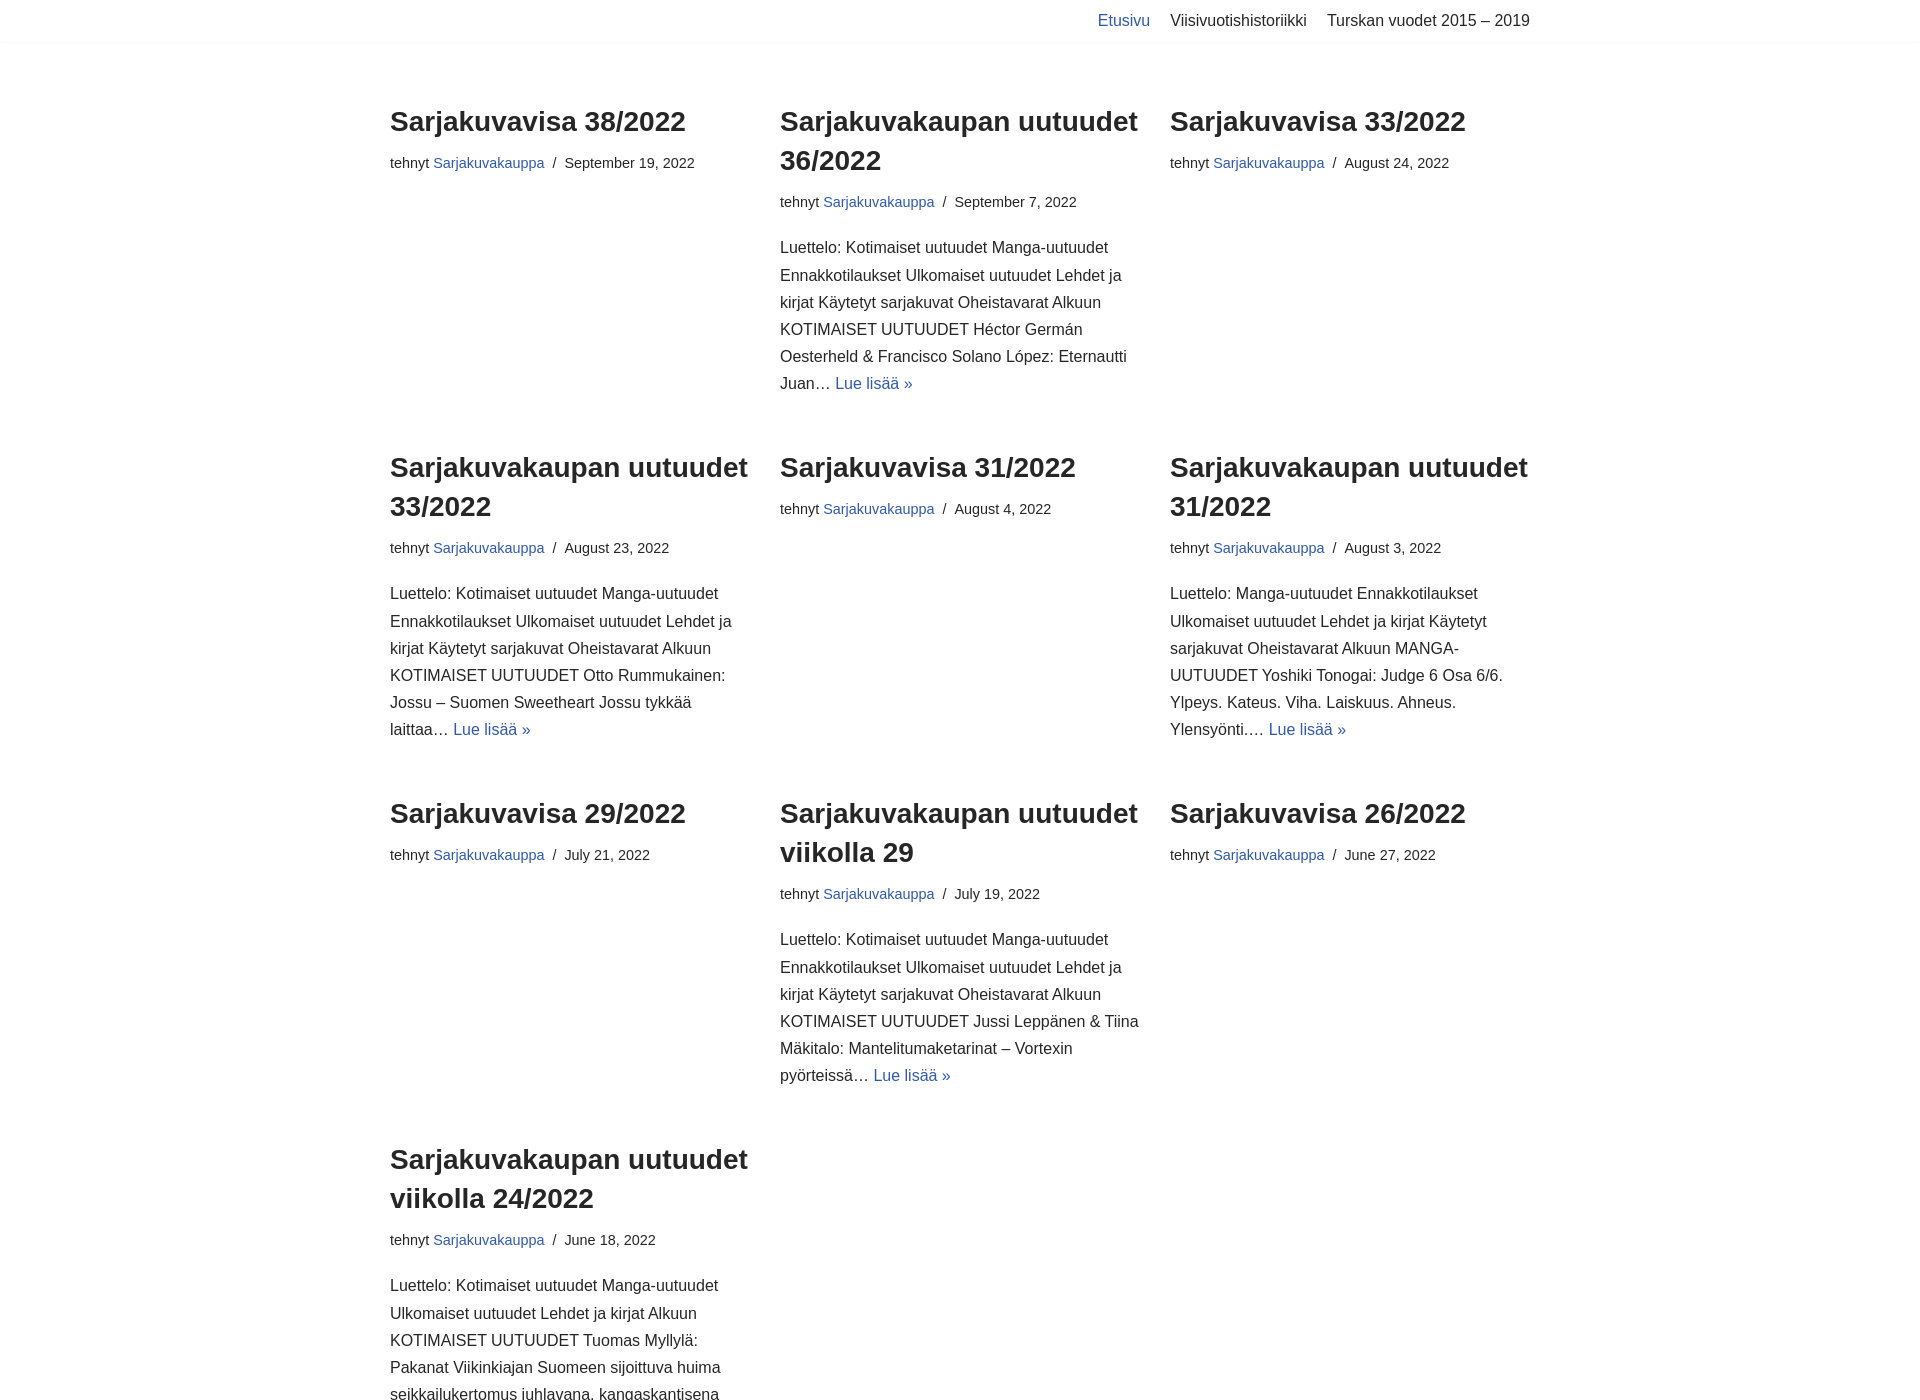 Screenshot for turunsarjakuvakauppa.fi